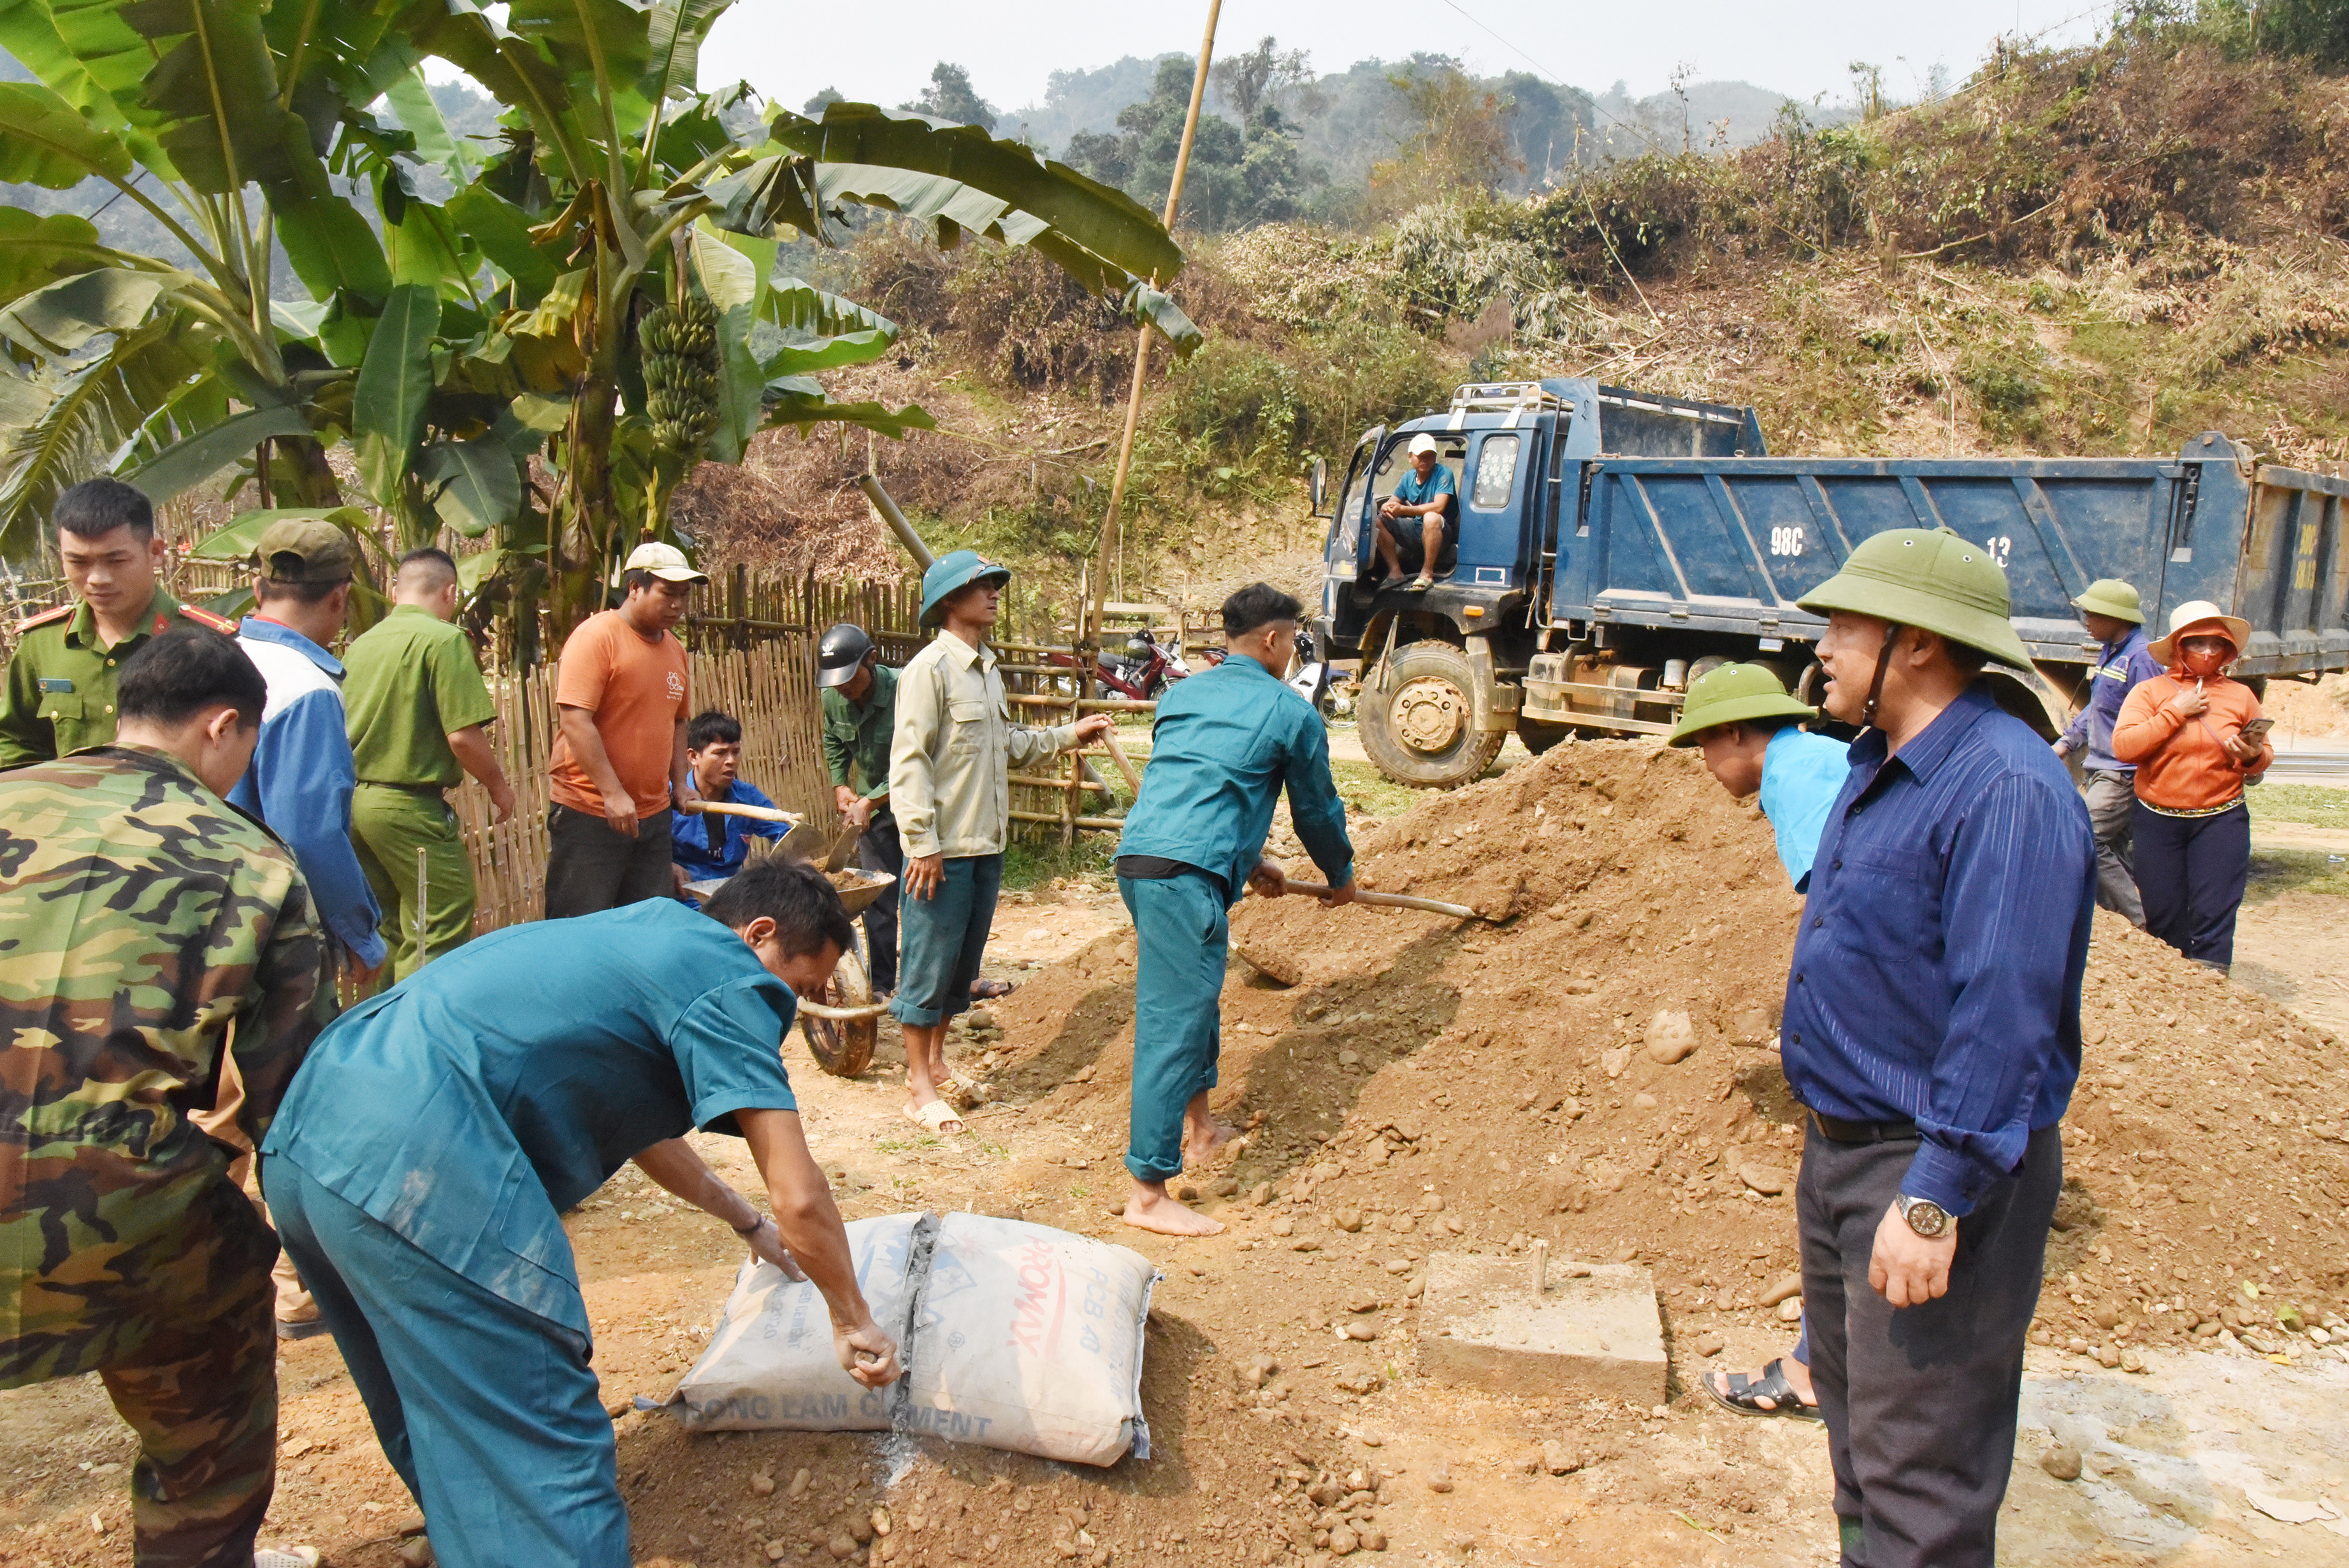 bna_Lãnh đạo UBND huyện Kỳ Sơn kiểm tra việc thực hiện hỗ trợ xây dựng nhà ở cho người dân ở xã Bảo Thắng ảnh Hoài Thu.JPG